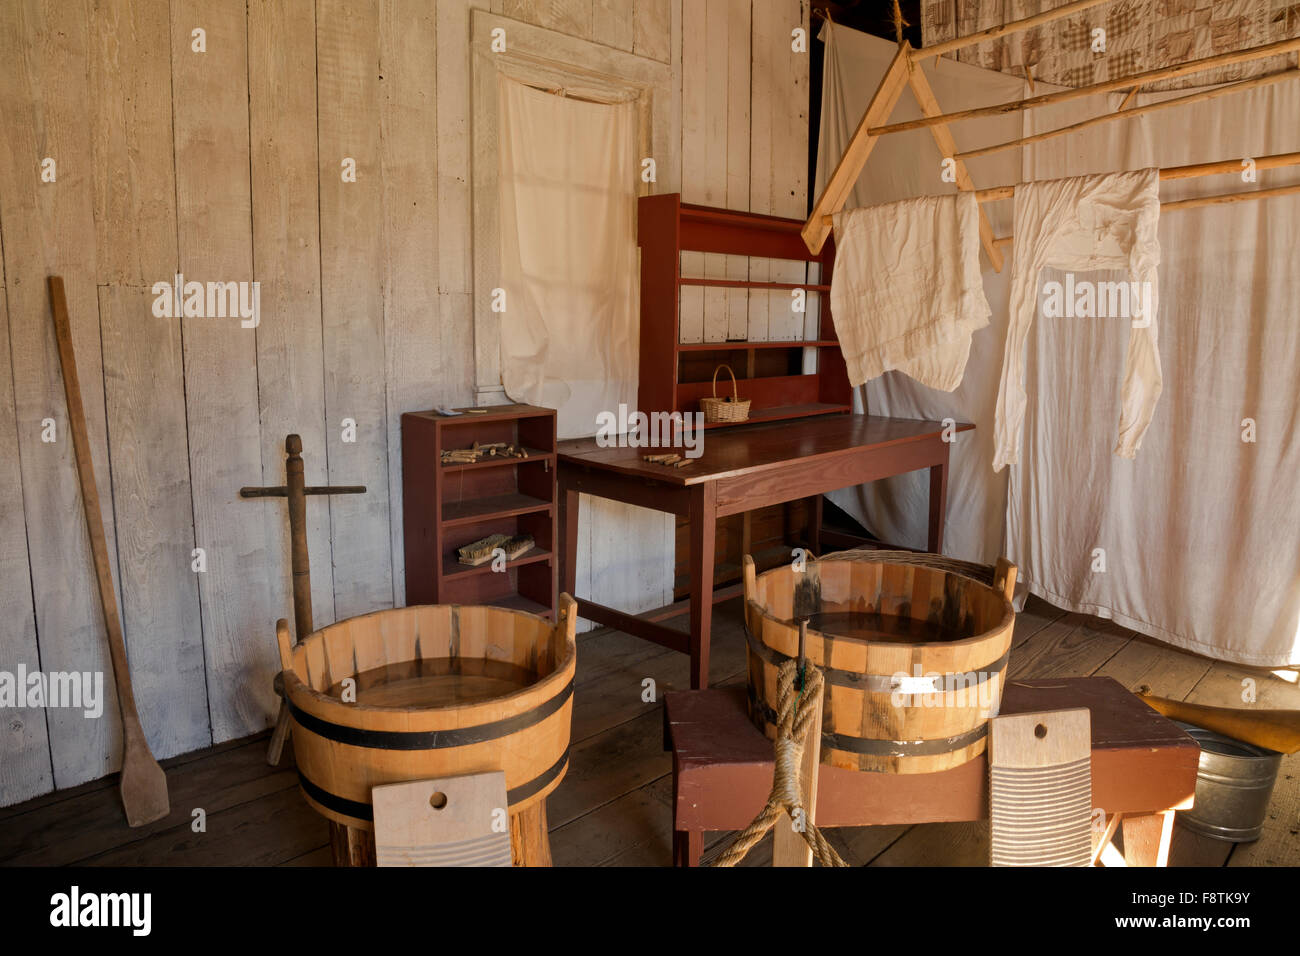 WASHINGTON - Waschraum mit Wannen, Waschbretter, Paddel, Bürsten, Wäscheklammern und Wäscheständer im Fort Nisqually Historic Park. Stockfoto